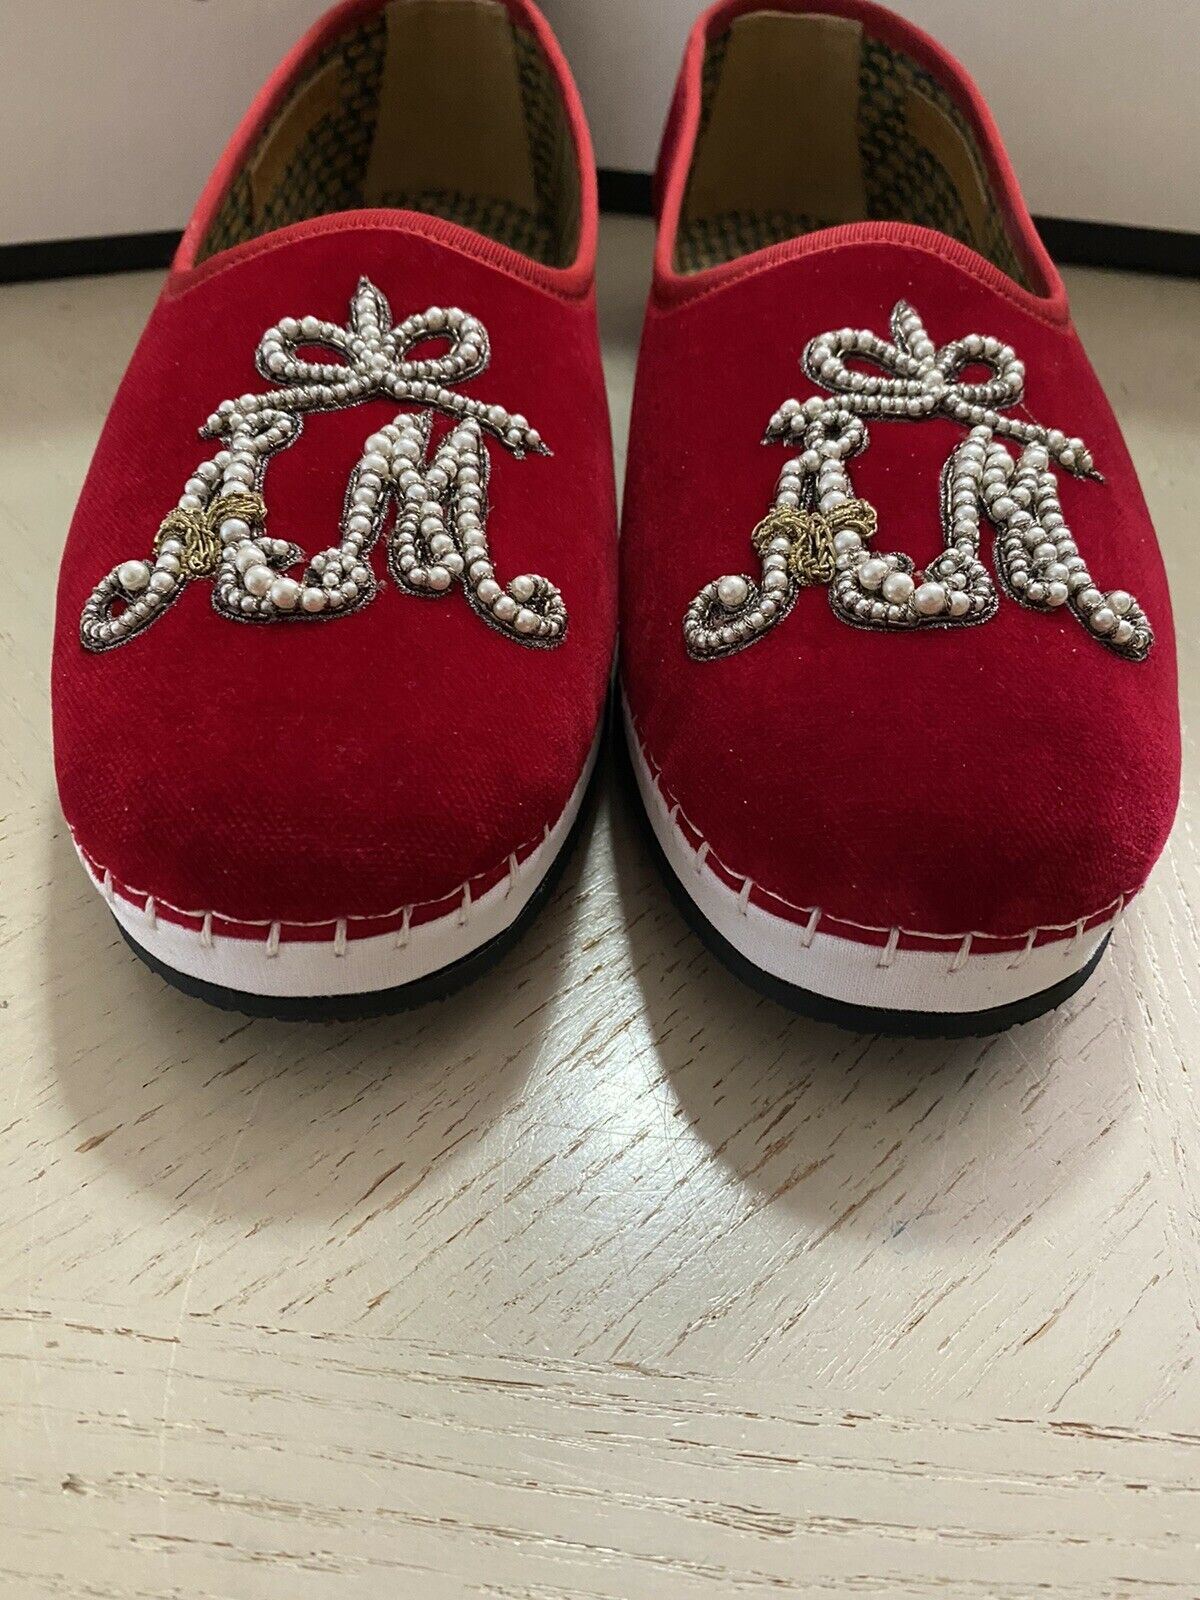 NIB 980 $ Gucci Herren-Loafer-Schuhe aus Samt, Rot, 7,5 US / 6,5 UK